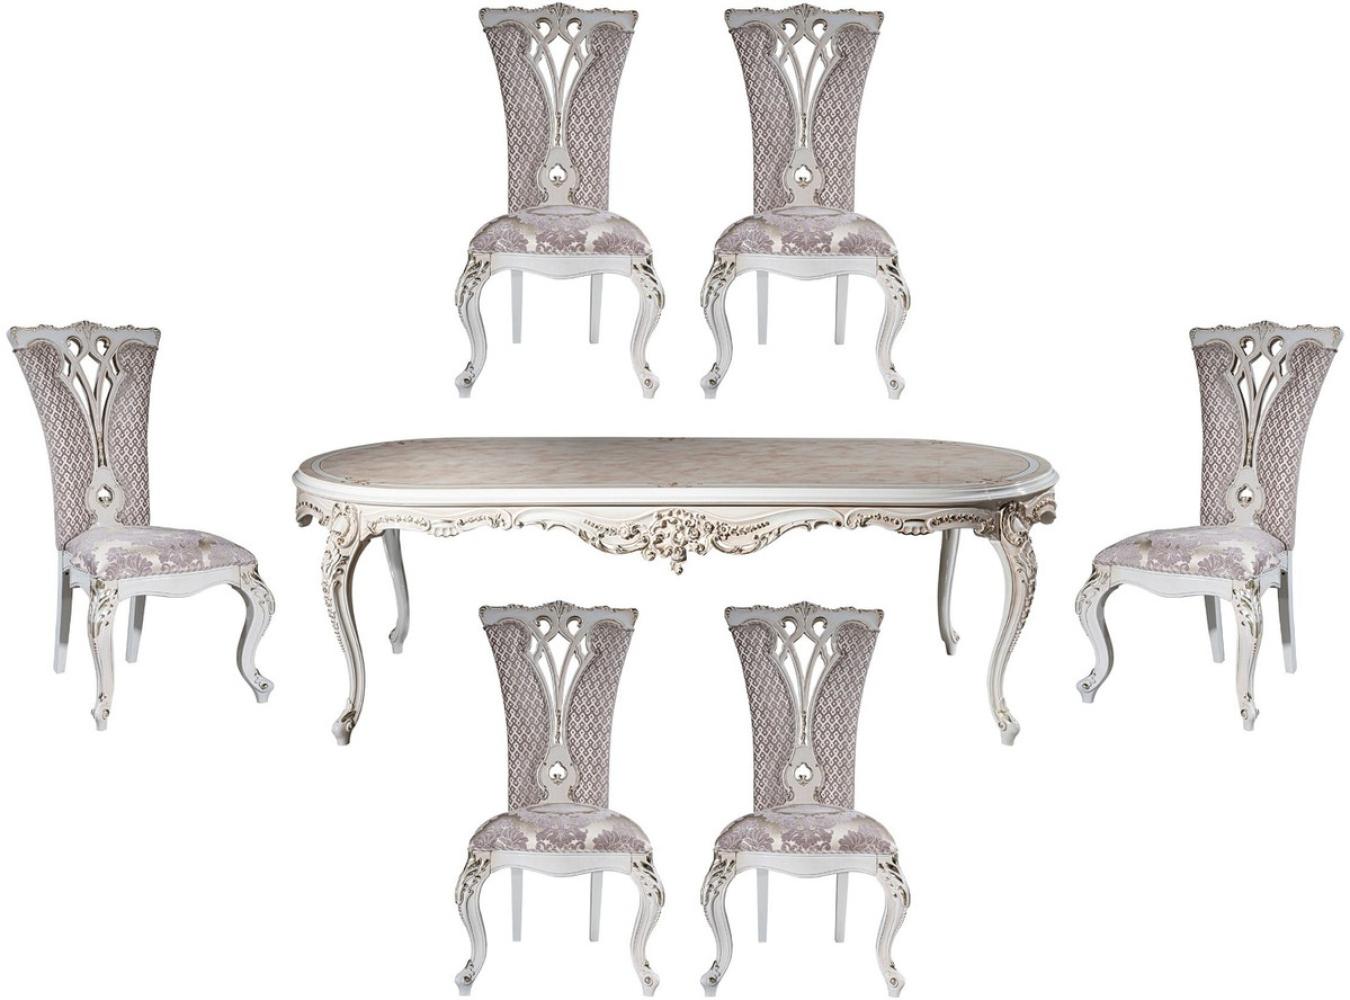 Casa Padrino Luxus Barock Esszimmer Set Lila / Beige / Weiß / Gold - 1 Ovaler Esstisch & 6 Esszimmerstühle mit elegantem Muster - Barock Esszimmer Möbel - Edel & Prunkvoll Bild 1